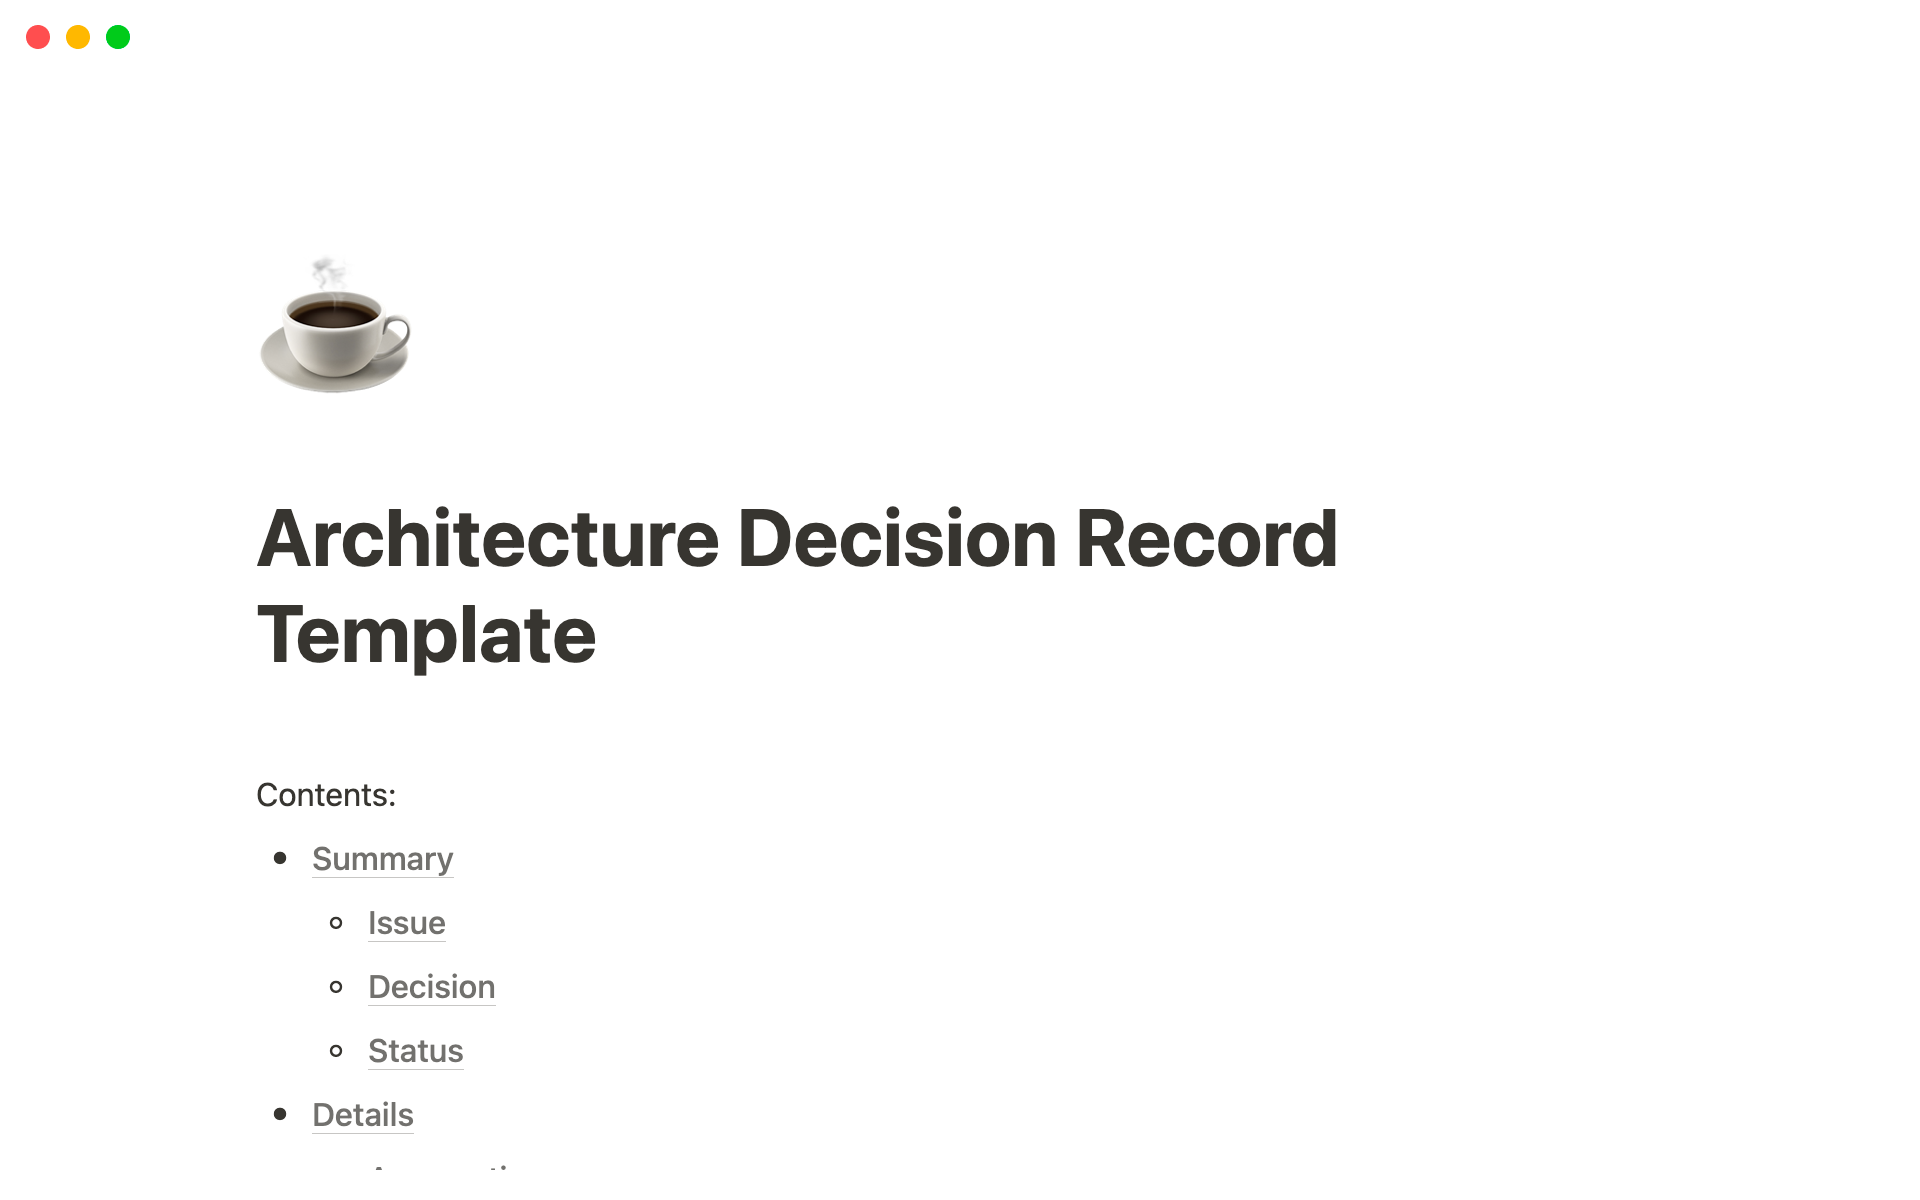 Aperçu du modèle de Architecture Decision Record Template